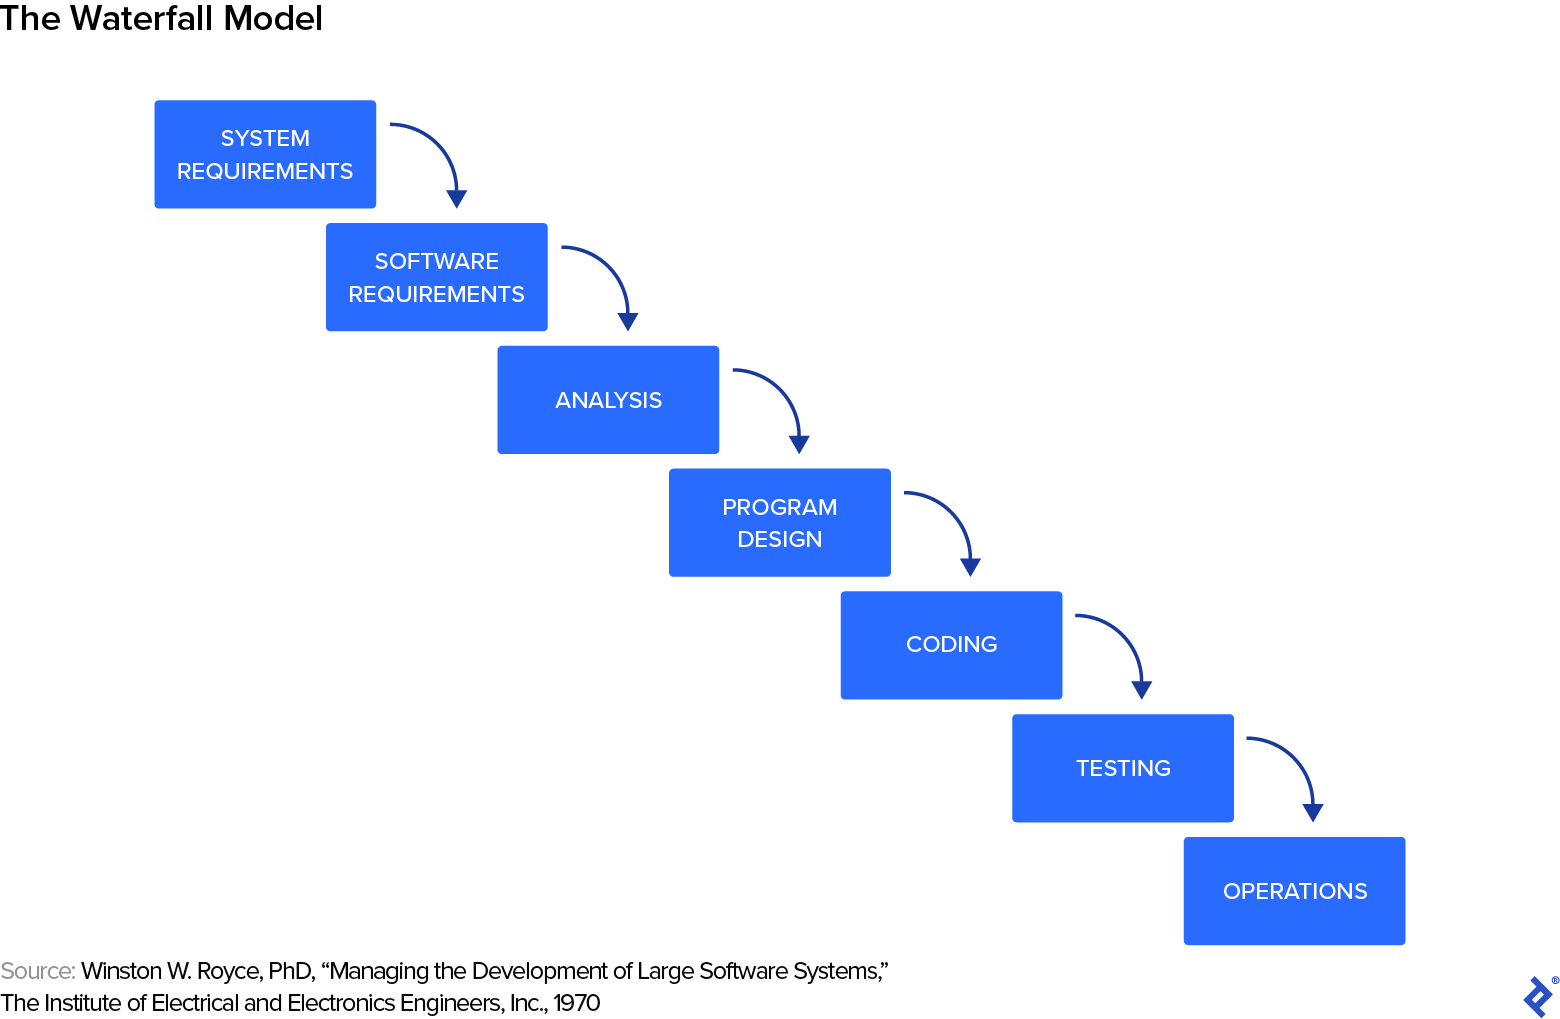 El modelo Waterfall, una serie de pasos desde los requisitos del sistema, los requisitos del software, el análisis, el diseño del programa, la codificación, las pruebas hasta las operaciones.